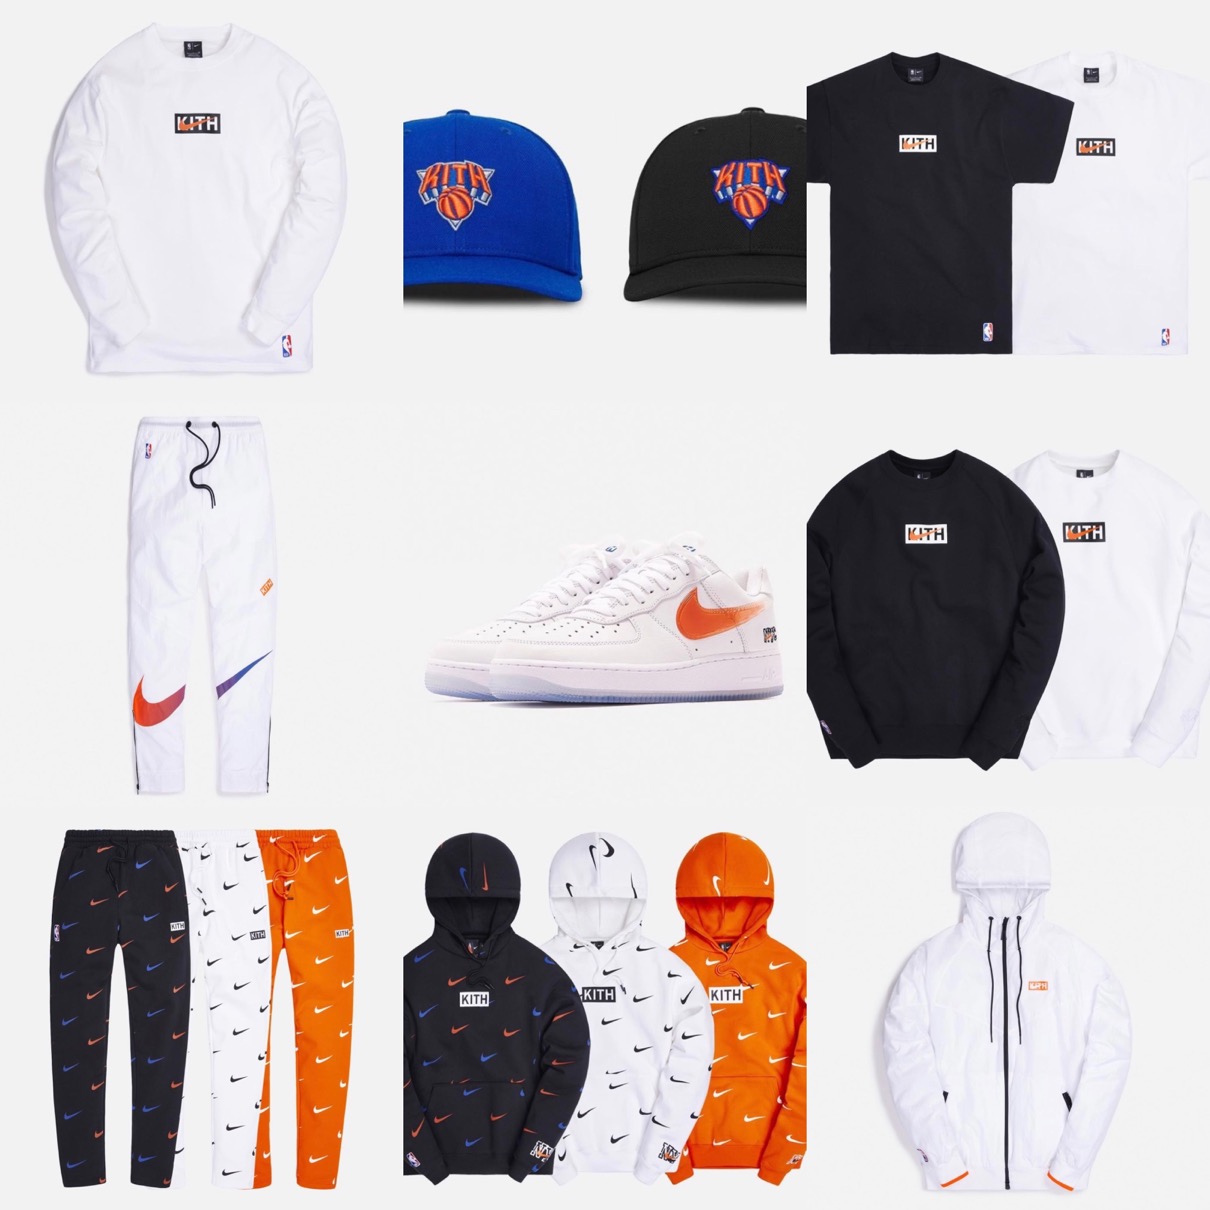 Nike × Kith】Air Force 1 Low “NYC Knicks”が国内12月18日に発売予定 